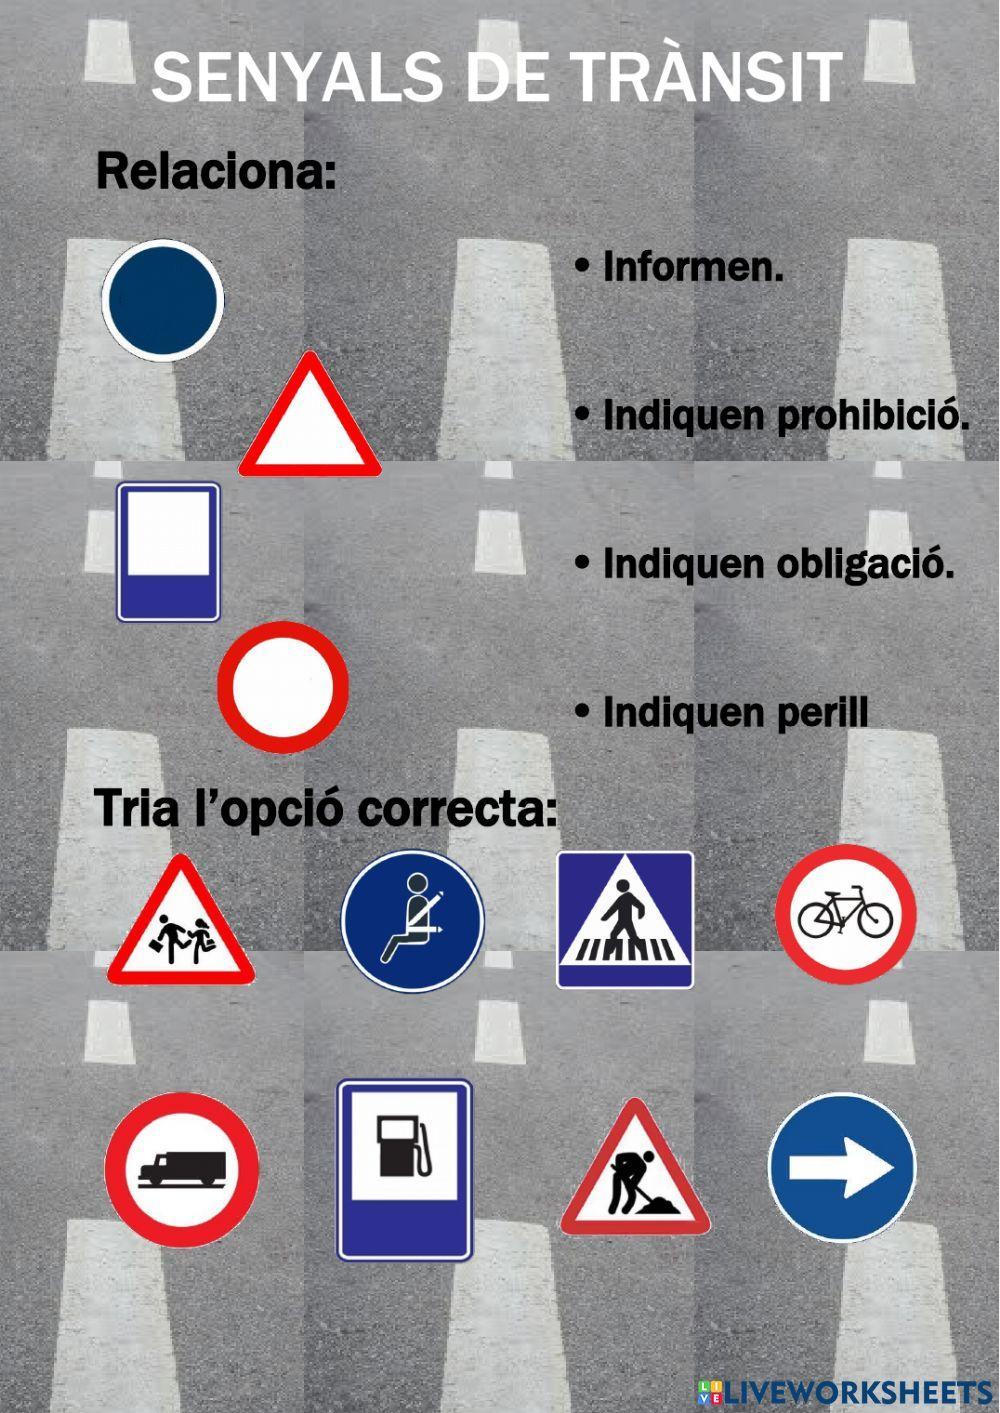 Els senyals de trànsit